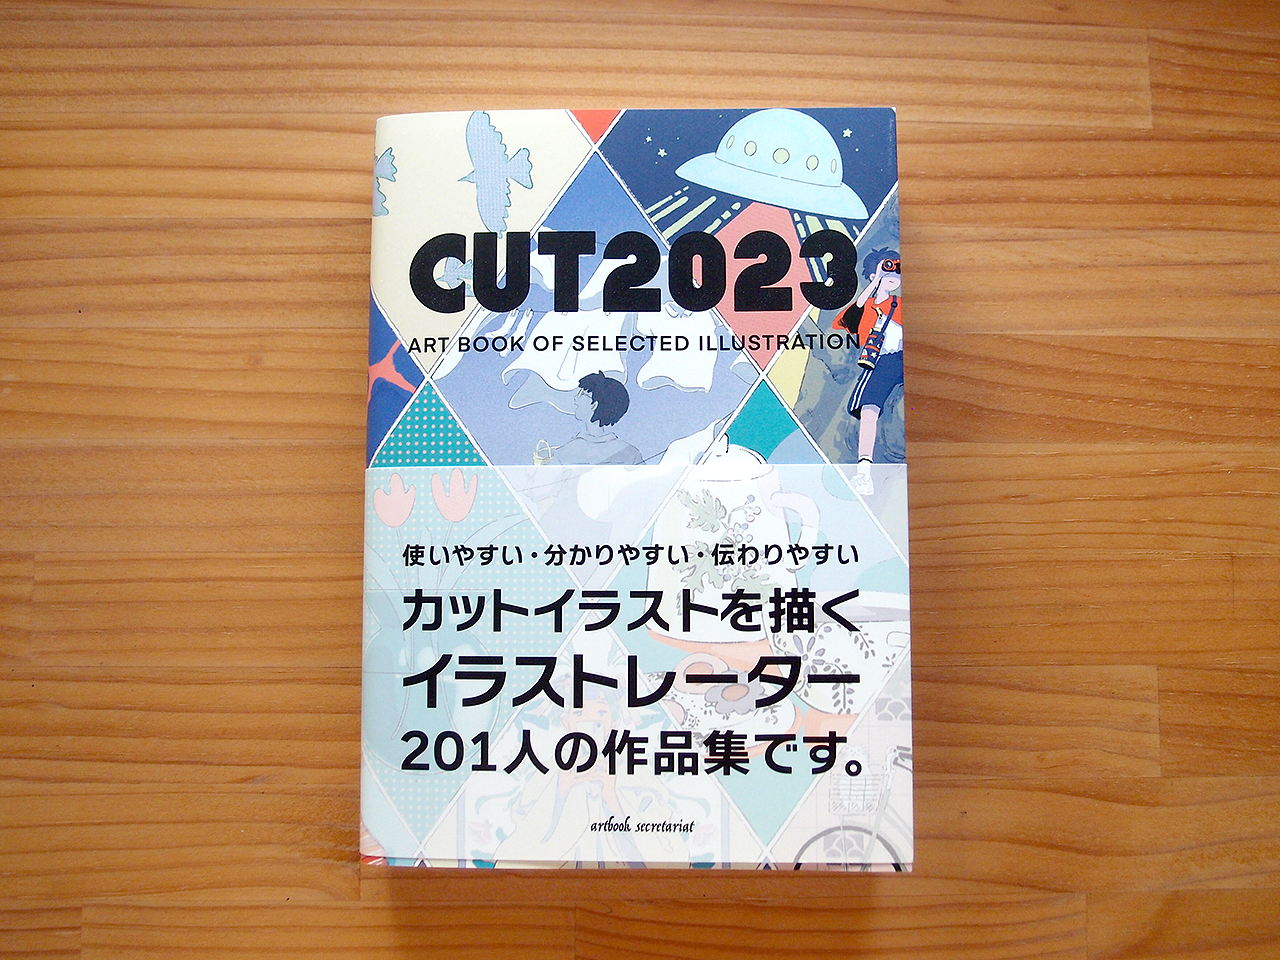 掲載誌：カットイラストを描くイラストレーター201名の作品集「CUT2023」